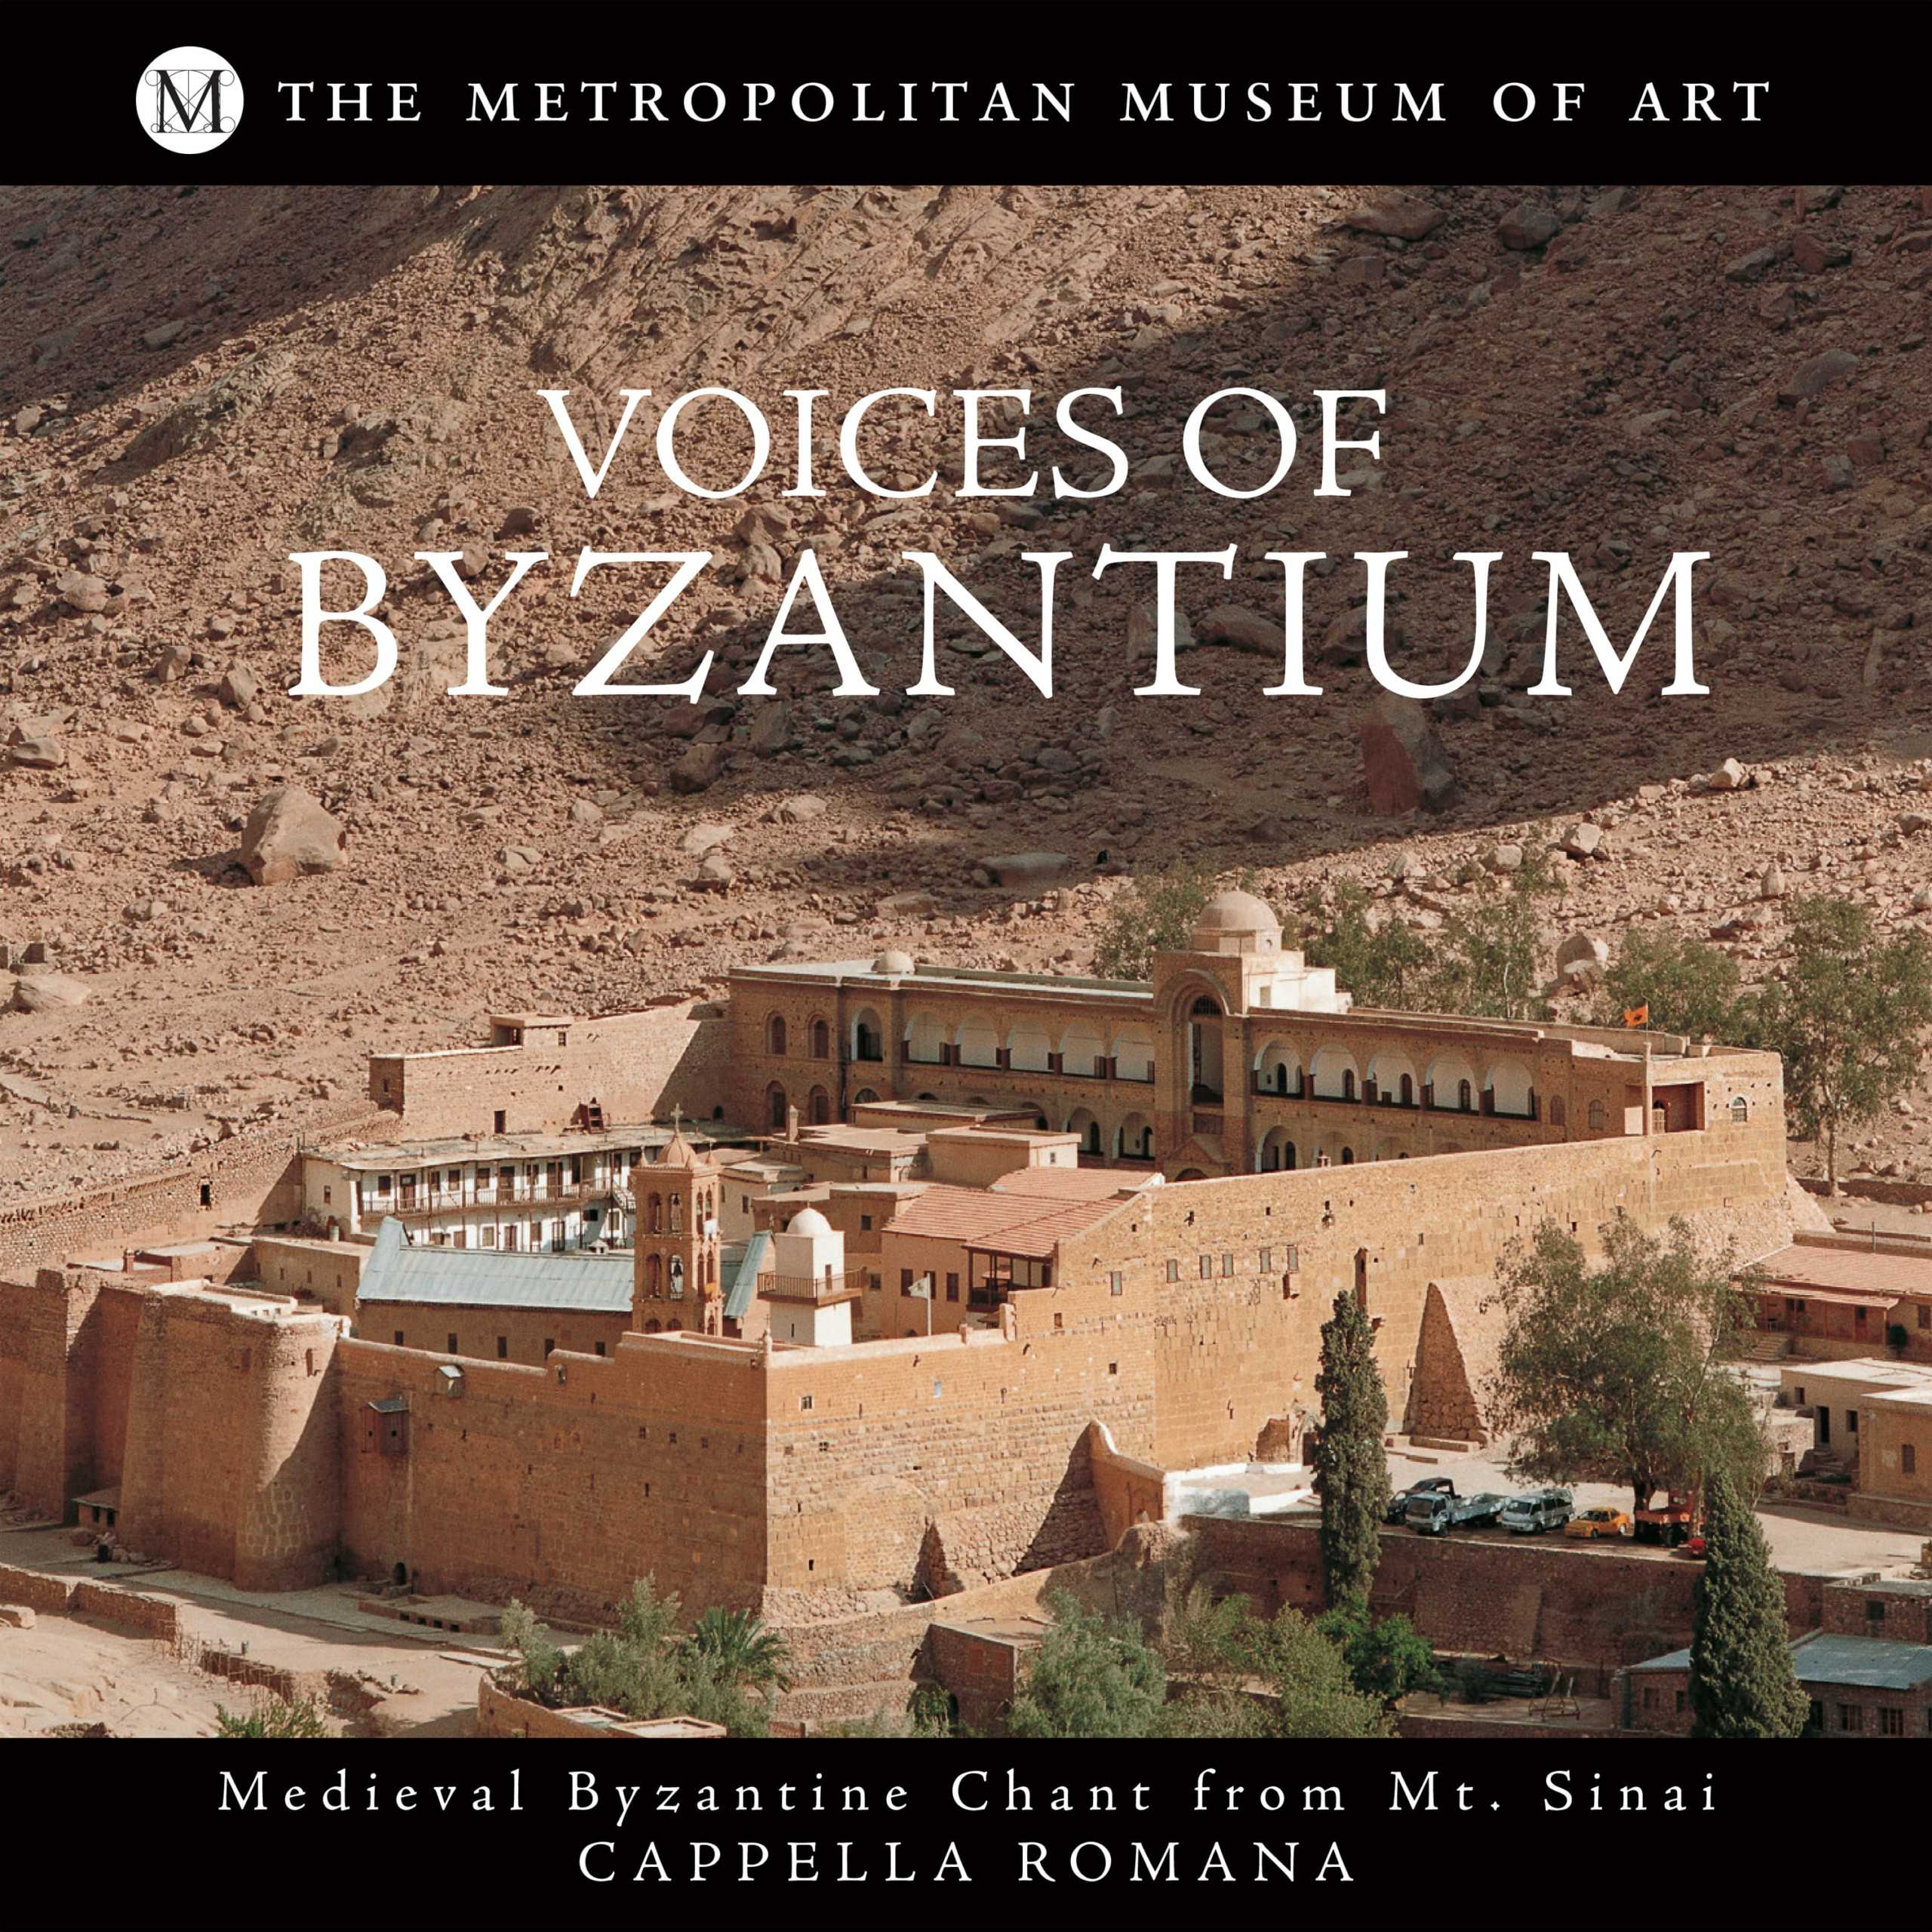 Mt Sinai Frontier of Byzantium